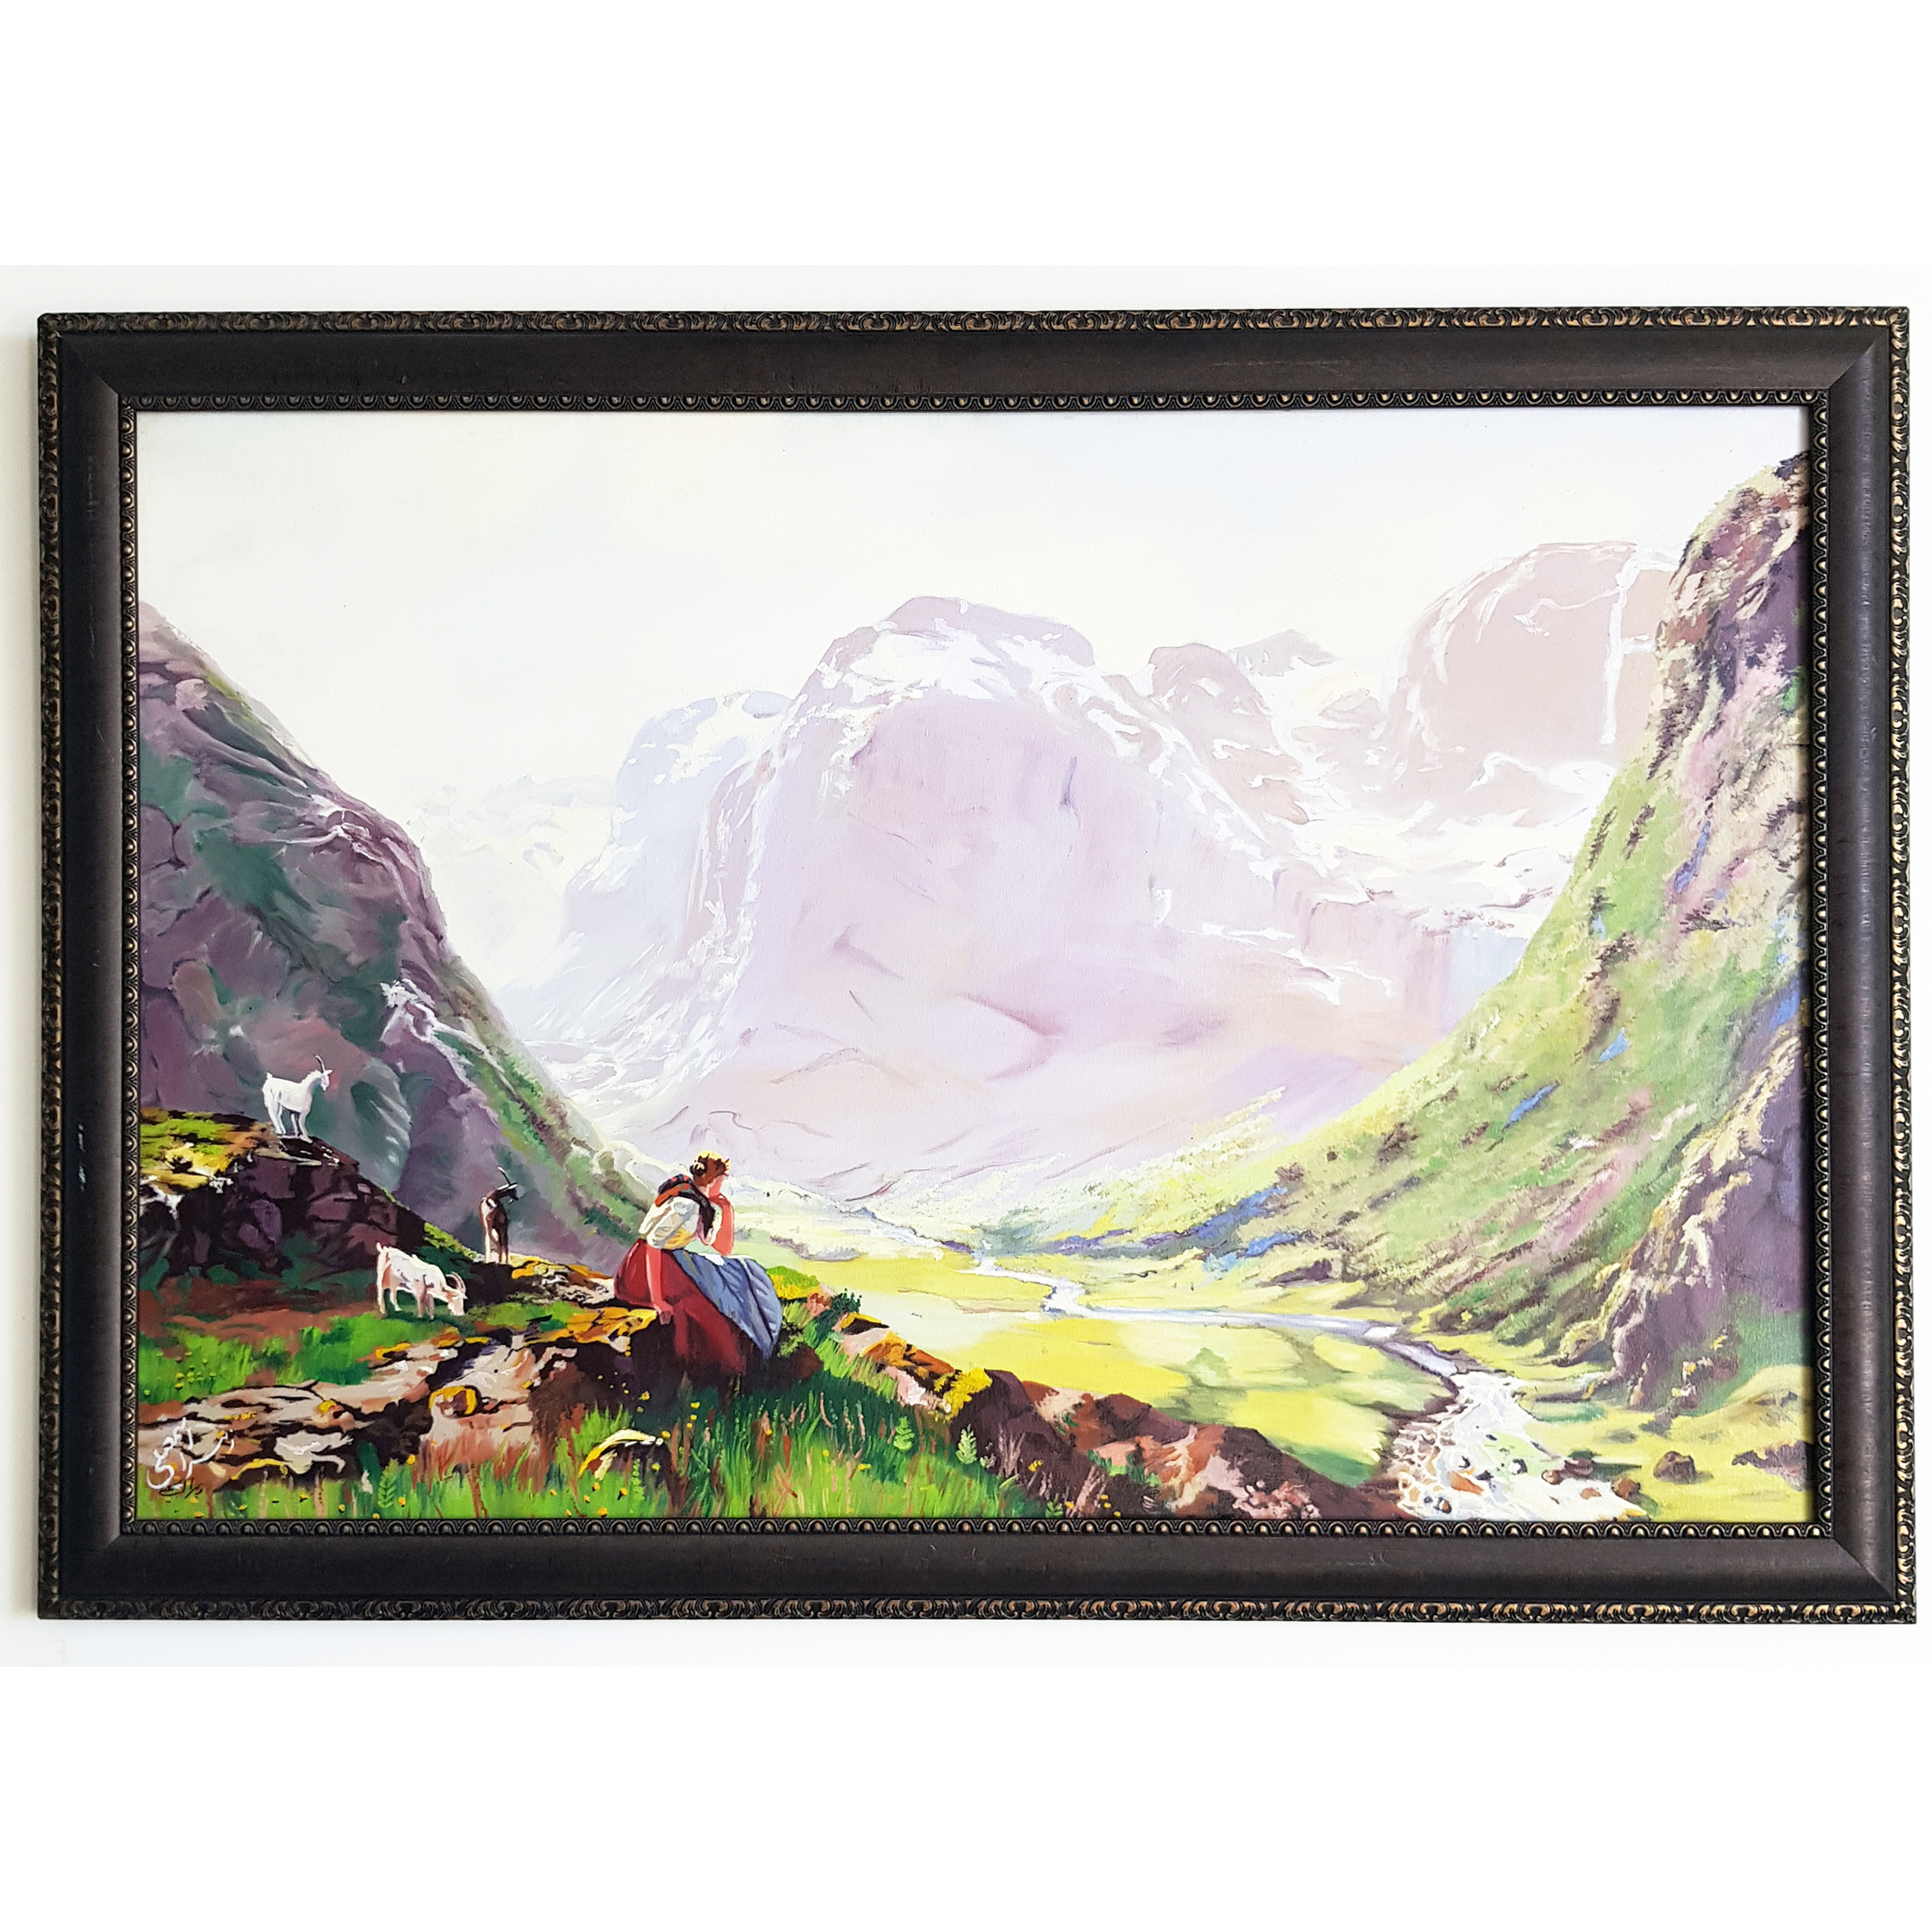 تابلو نقاشی رنگ روغن طرح دختر در کوهستان